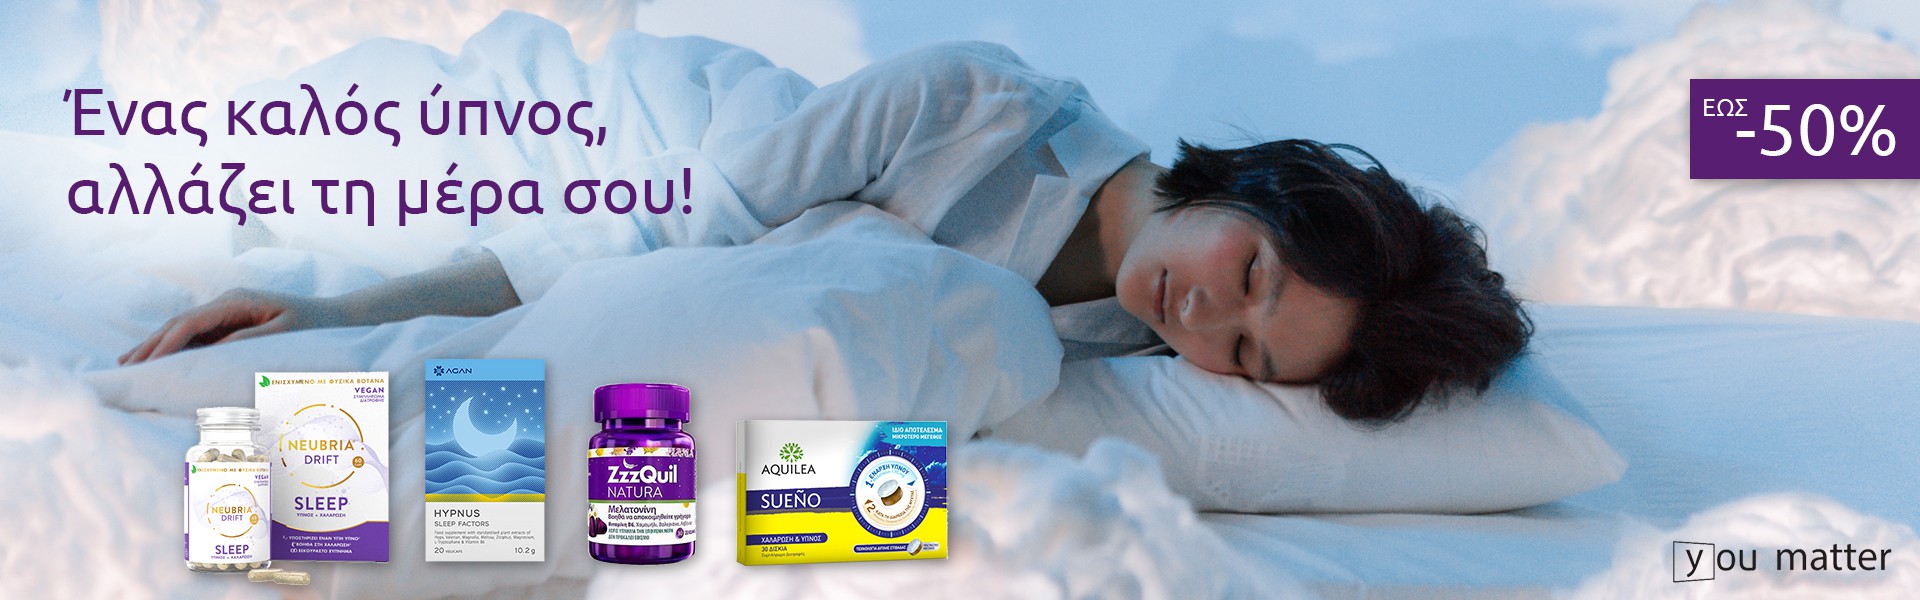 Ένας καλός ύπνος αλλάζει τη μέρα σου!